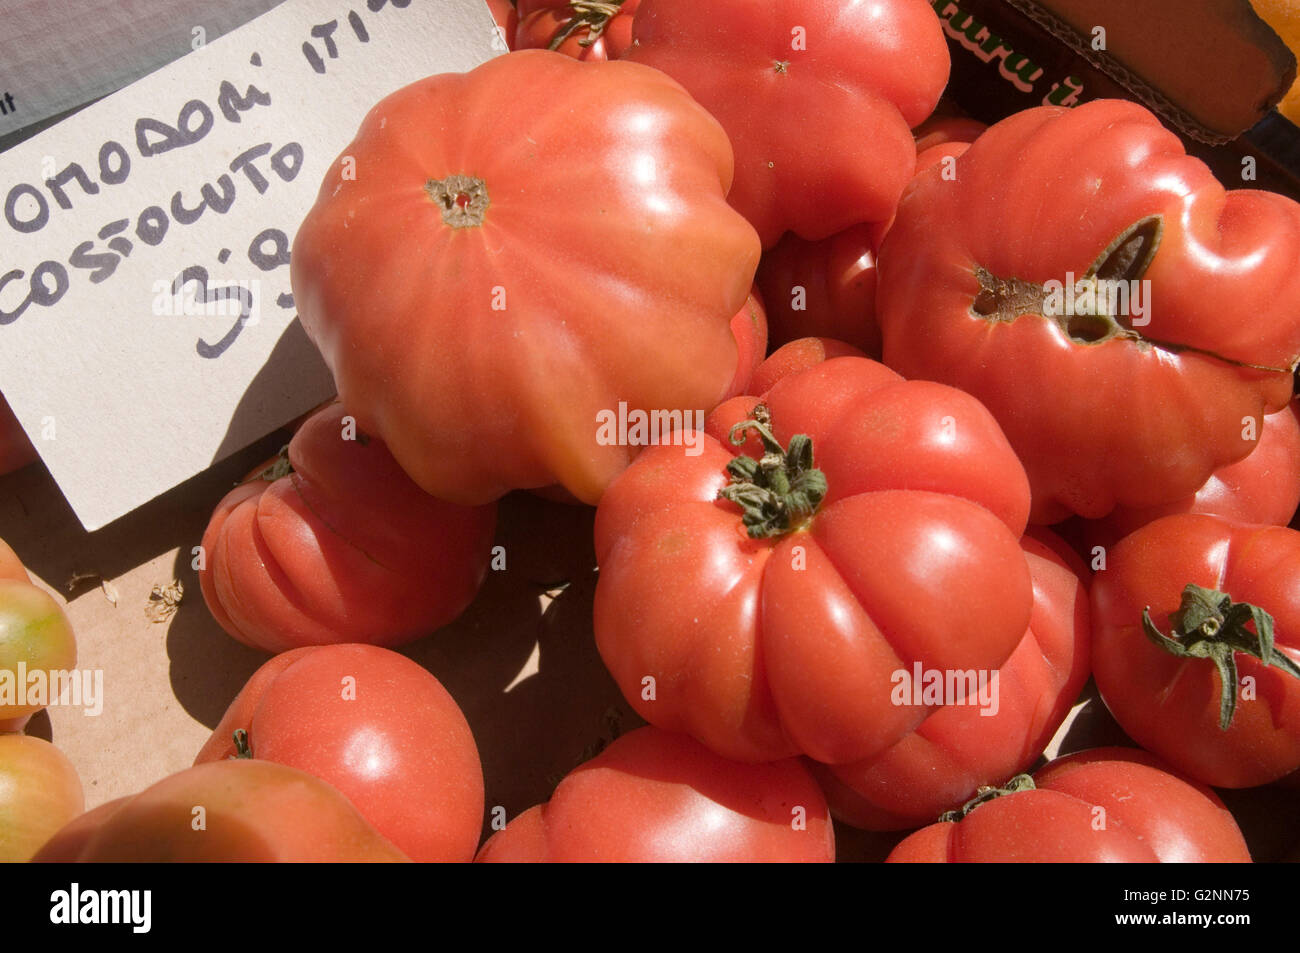 Tomates Tomates rustique en forme de Mlle déformé difforme heirloom fruits fruits de forme étrange rouge formes forme curieusement costoluto savoureux Banque D'Images